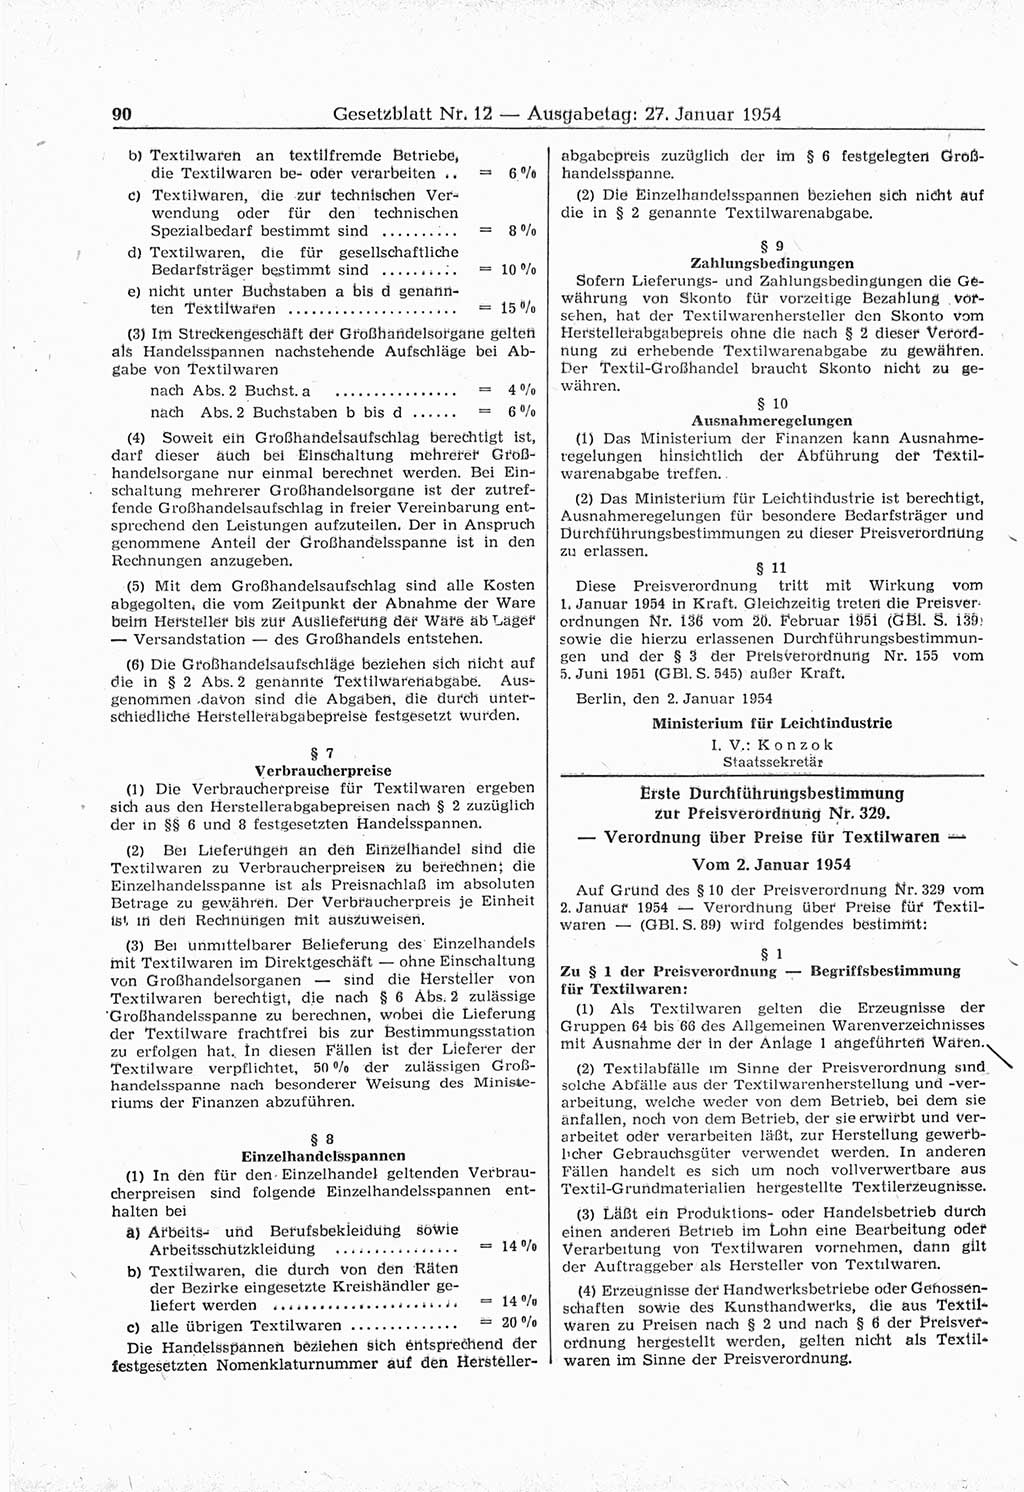 Gesetzblatt (GBl.) der Deutschen Demokratischen Republik (DDR) 1954, Seite 90 (GBl. DDR 1954, S. 90)